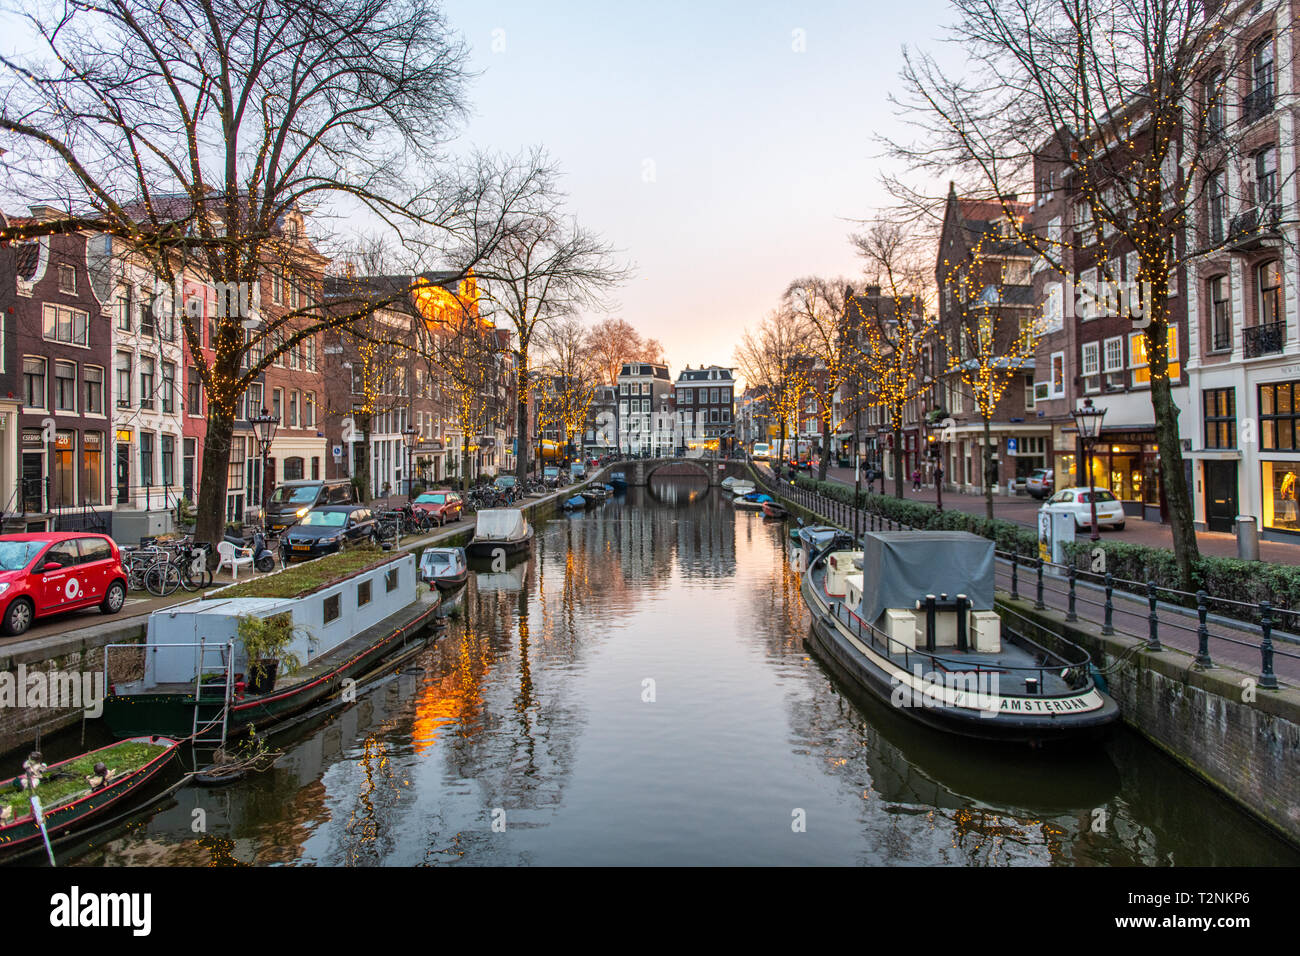 Una barca a leggere 'Amsterdam' è ancorata a un canale con molte altre barche in Amsterdam, Paesi Bassi Foto Stock